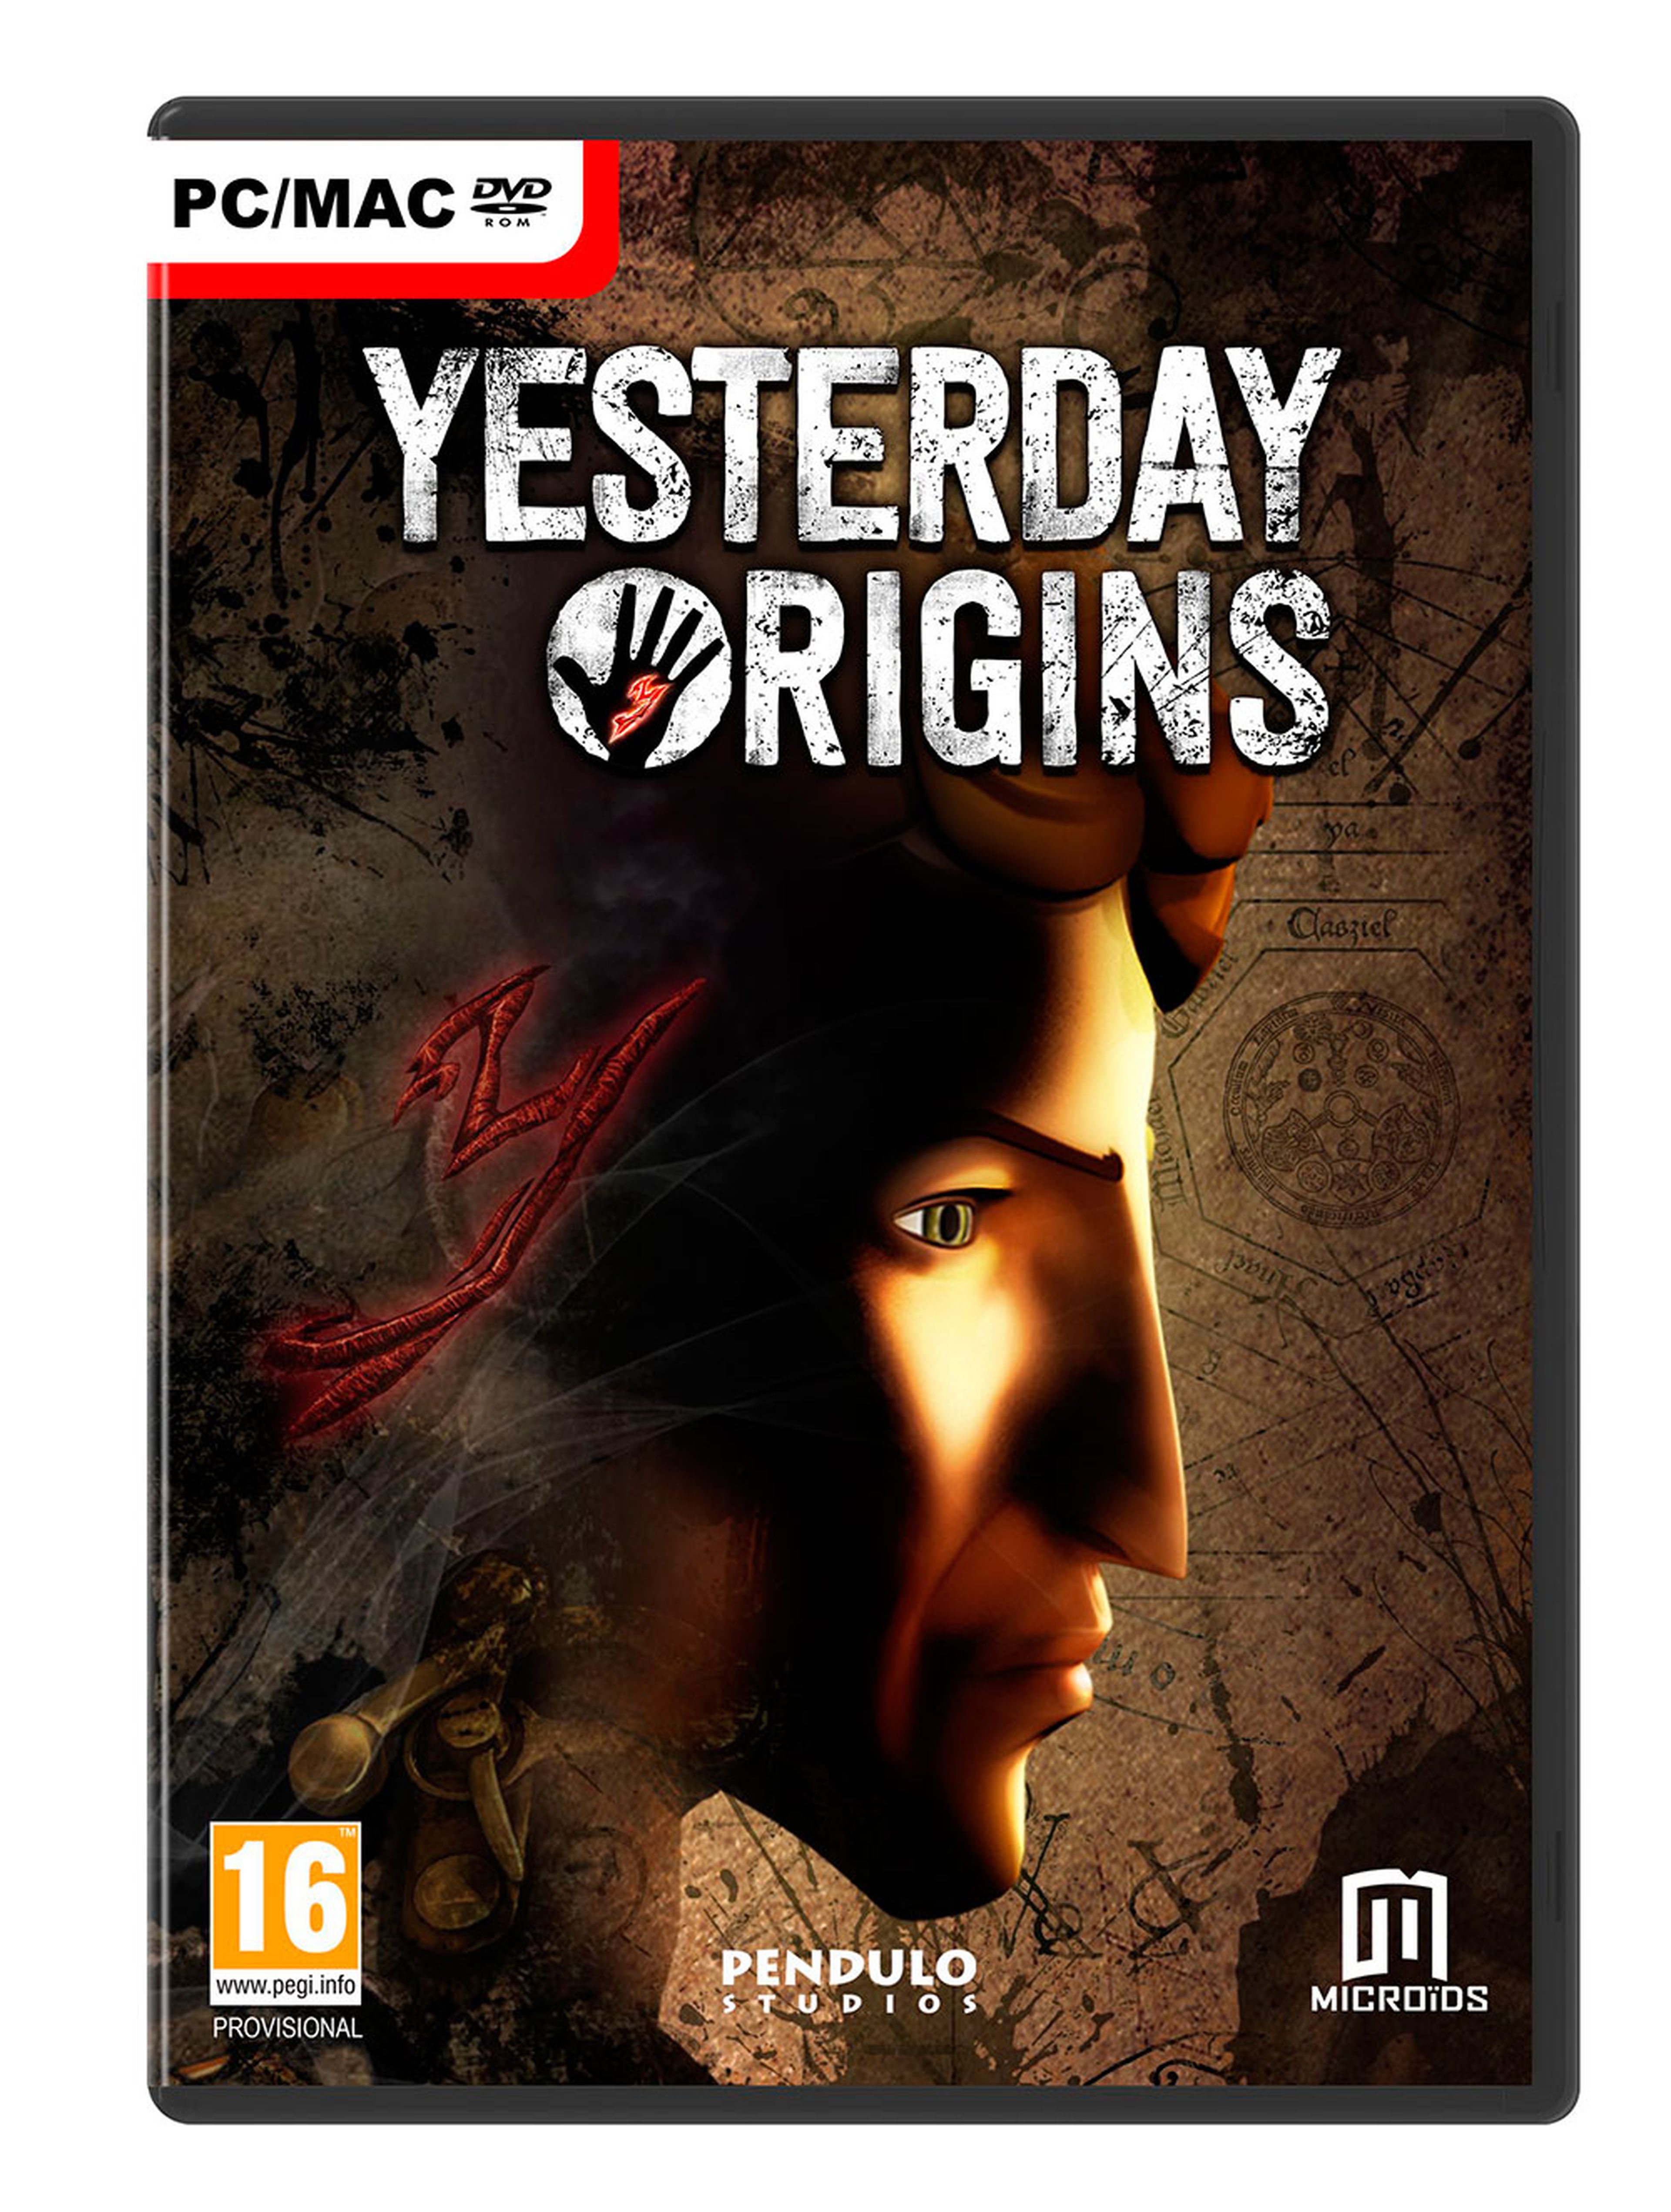 Carátula de Yesterday Origins en su versión para PC.